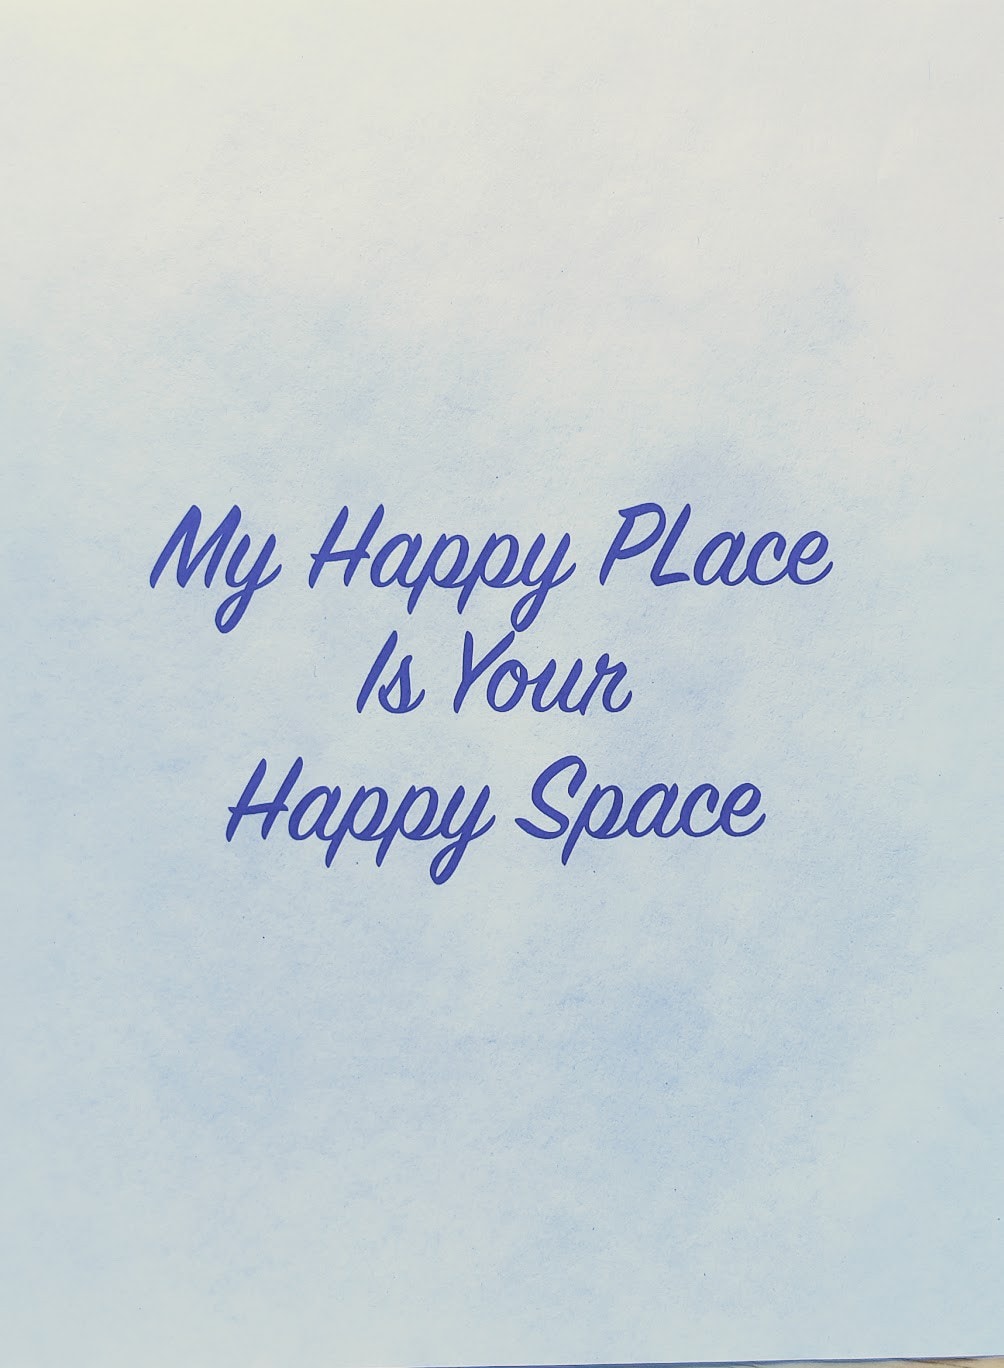 你已经找到你的快乐空间了吗？